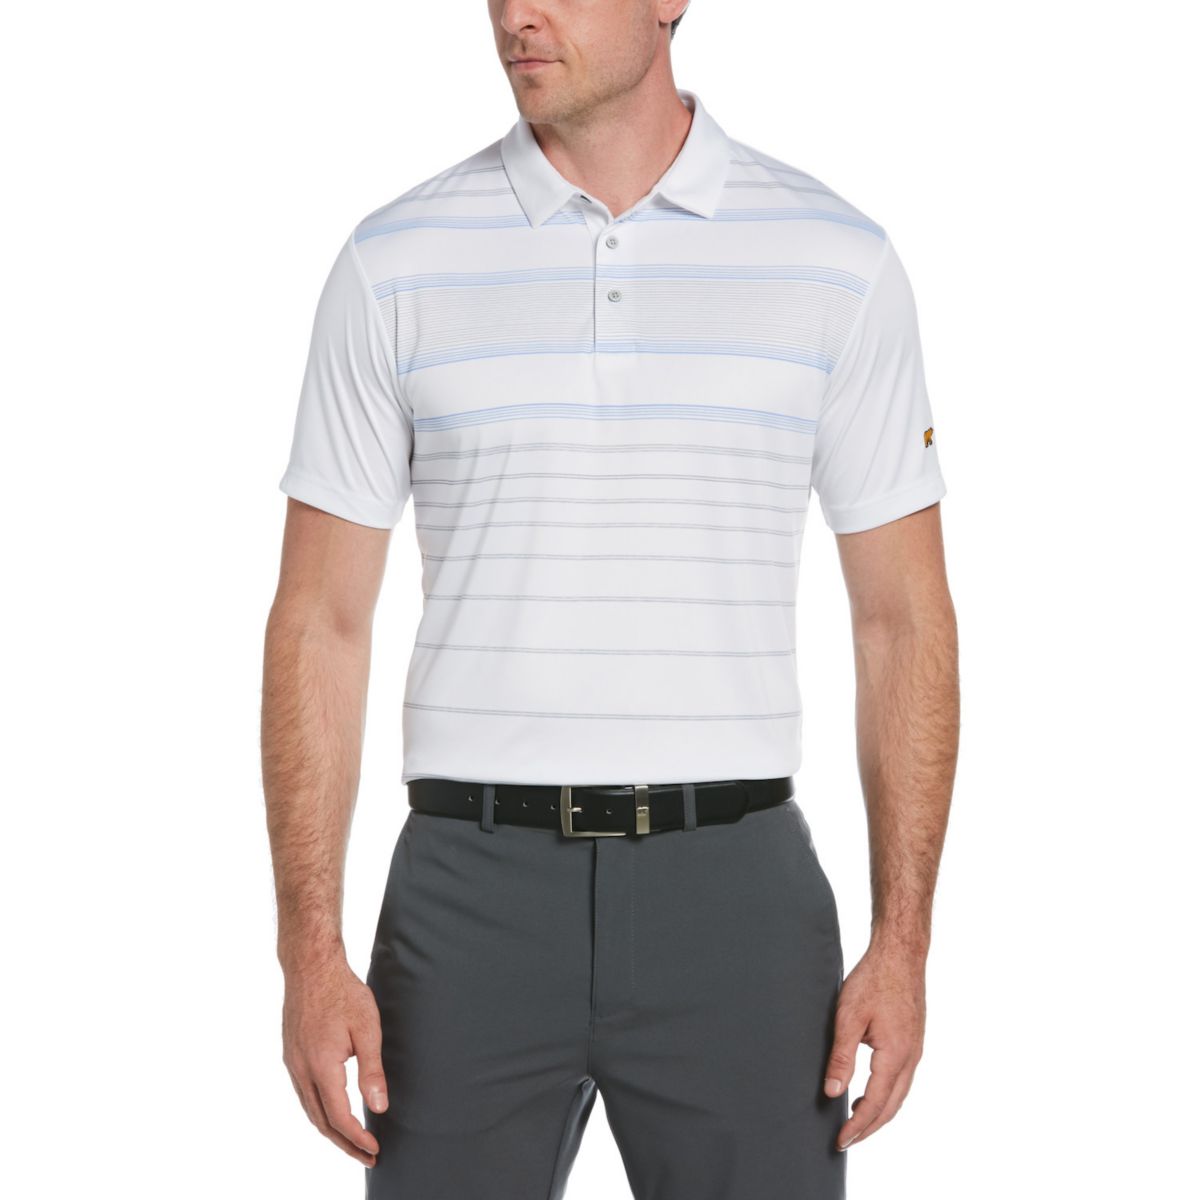 Мужская рубашка-поло для гольфа в полоску классического кроя Jack Nicklaus StayDri для гольфа Performance Jack Nicklaus